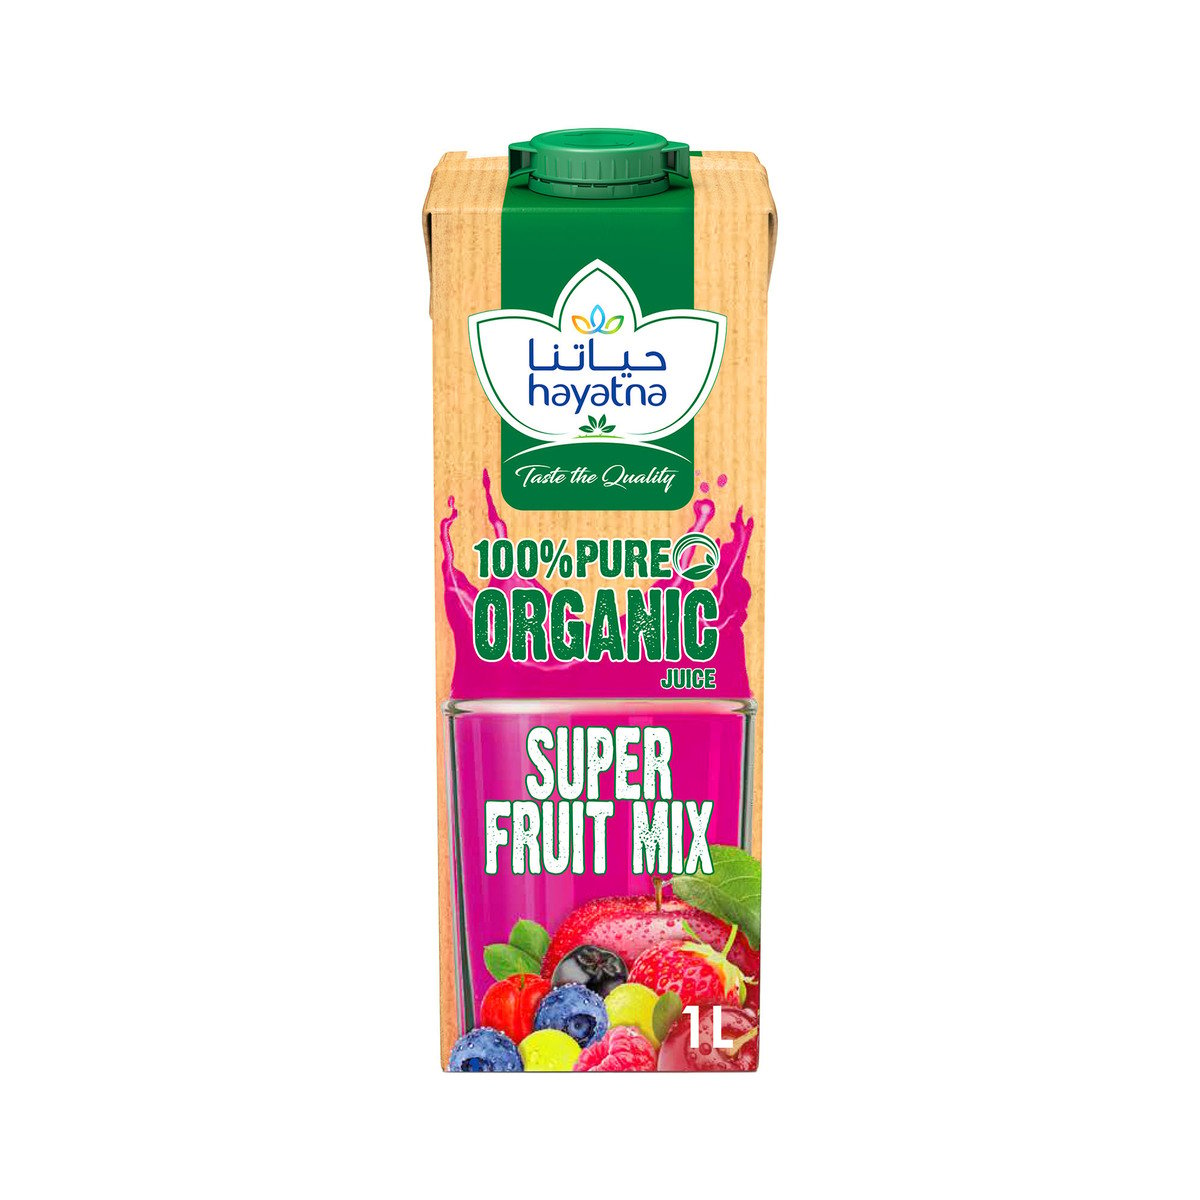 Hayatna Organic Super Fruit Mix Juice 1 Litre